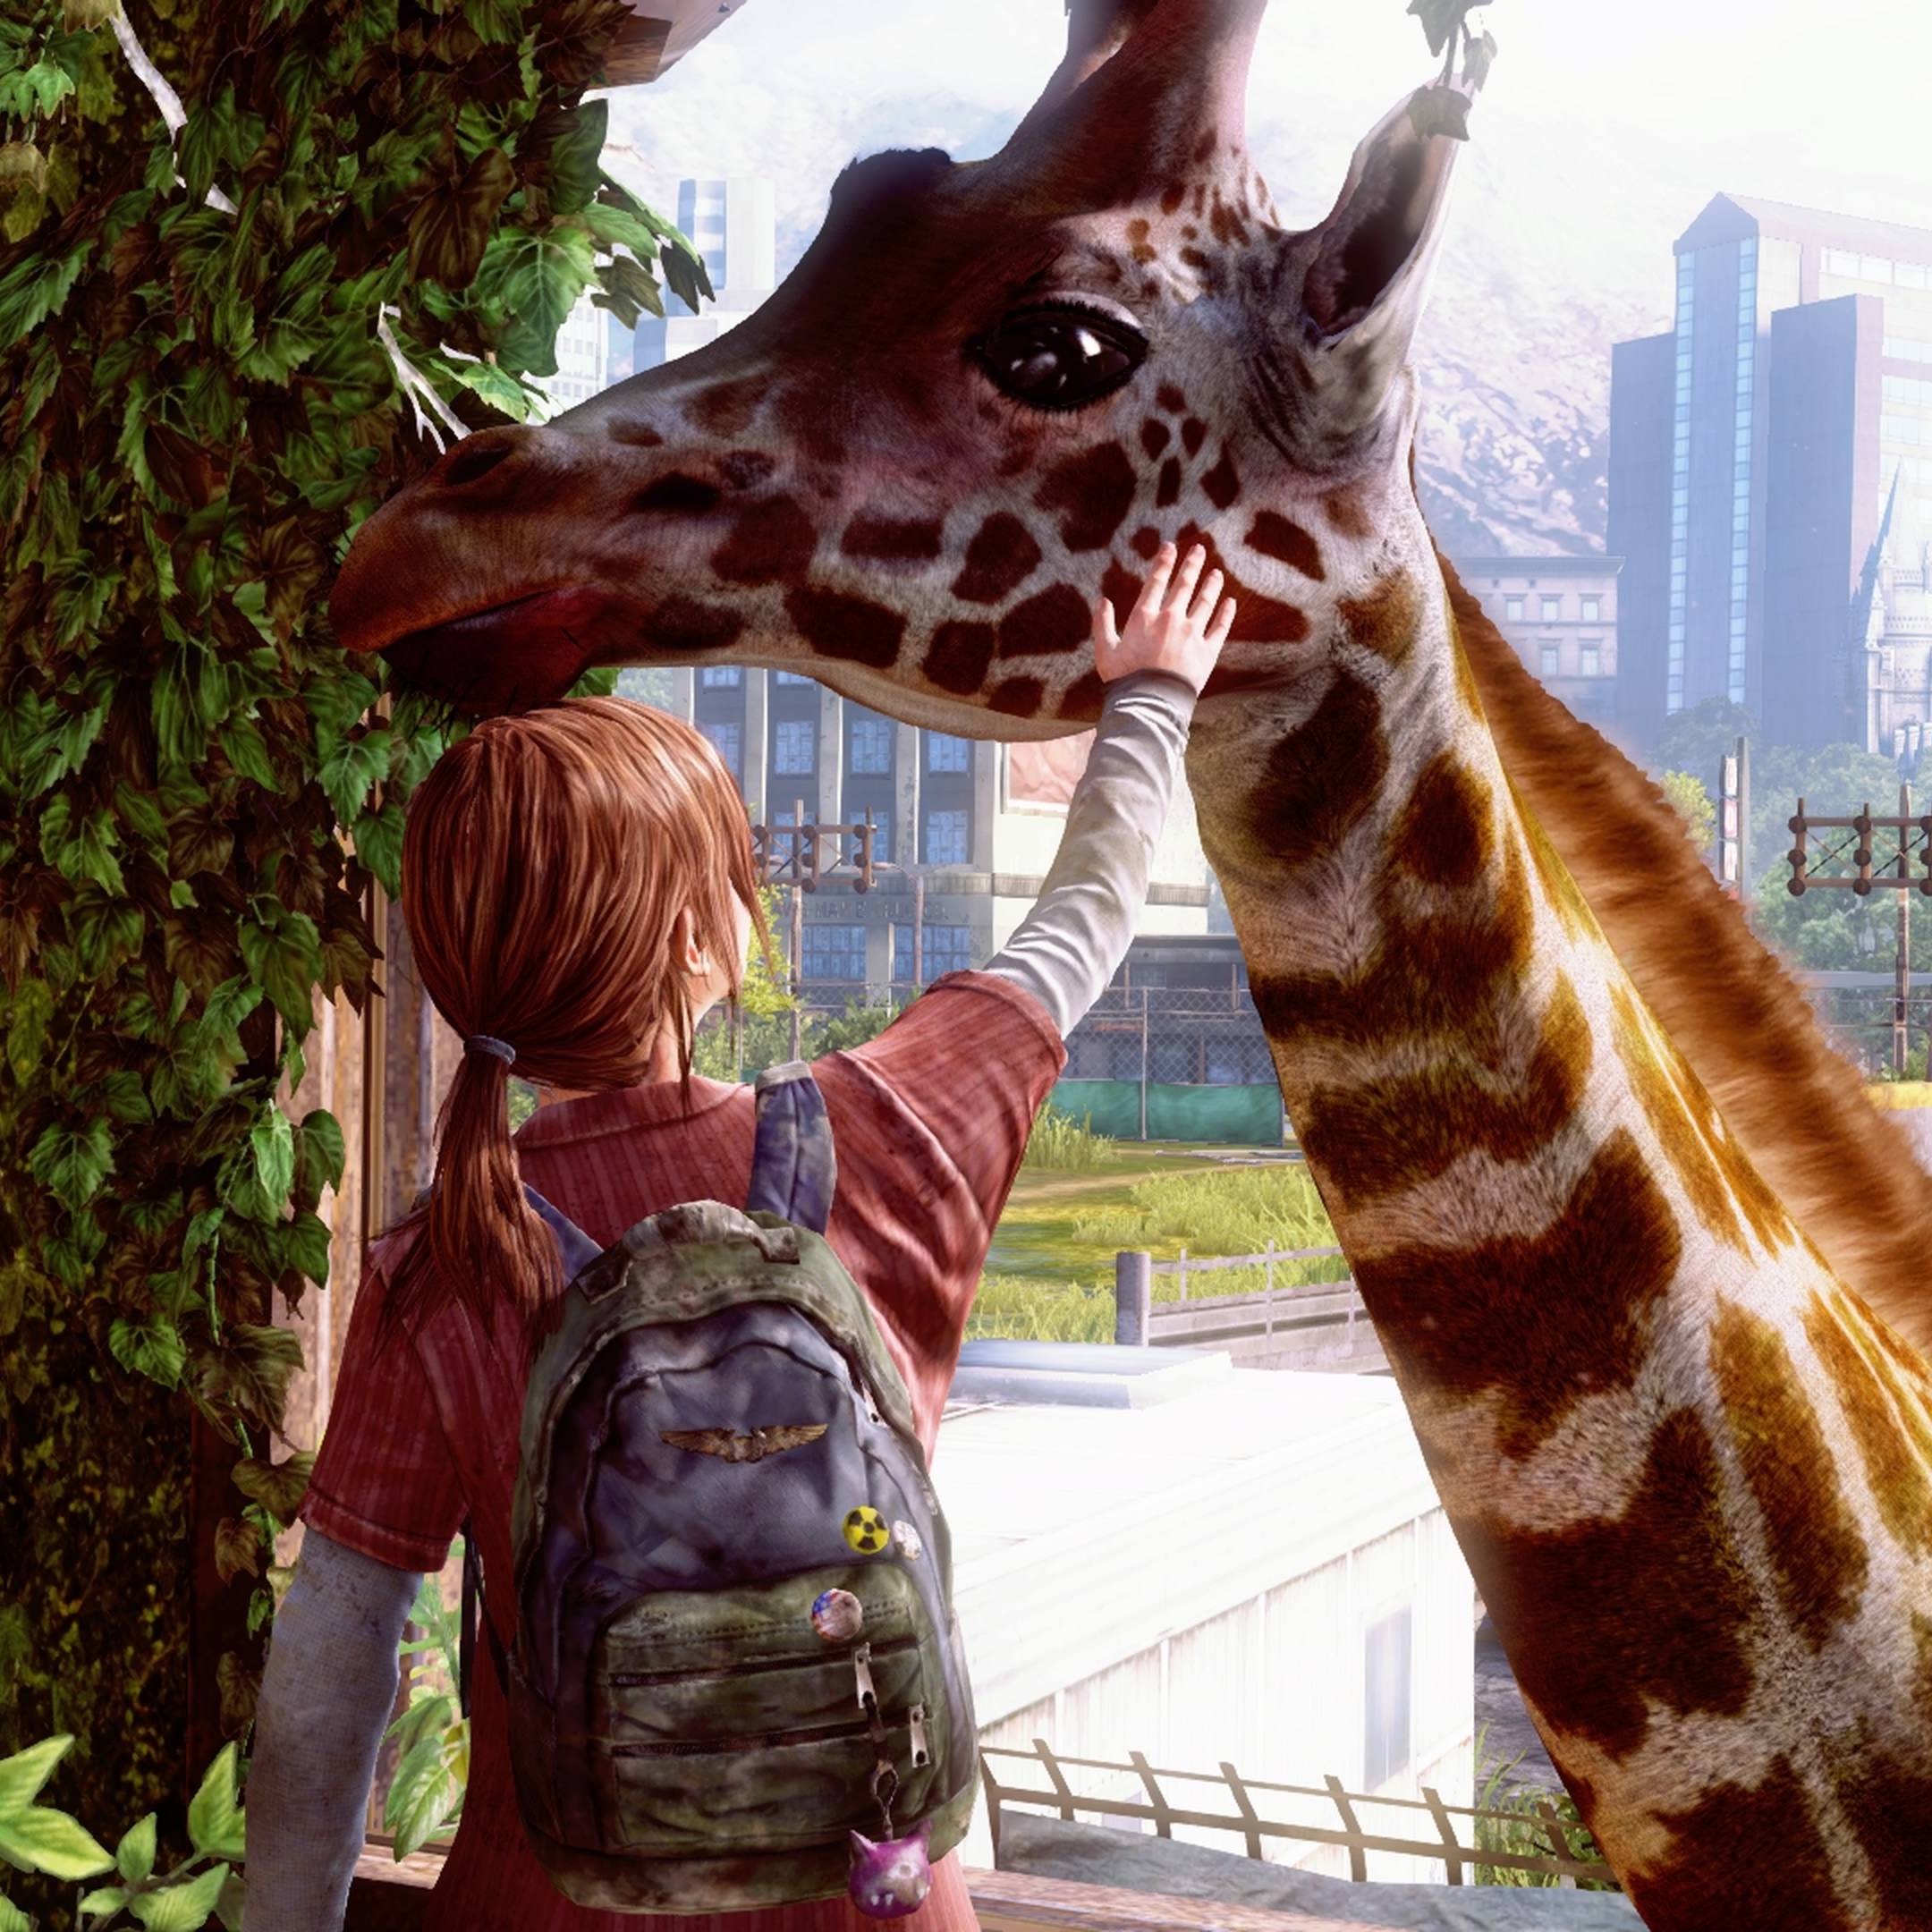 The Last of Us chega aos 10 anos com um legado inigualado